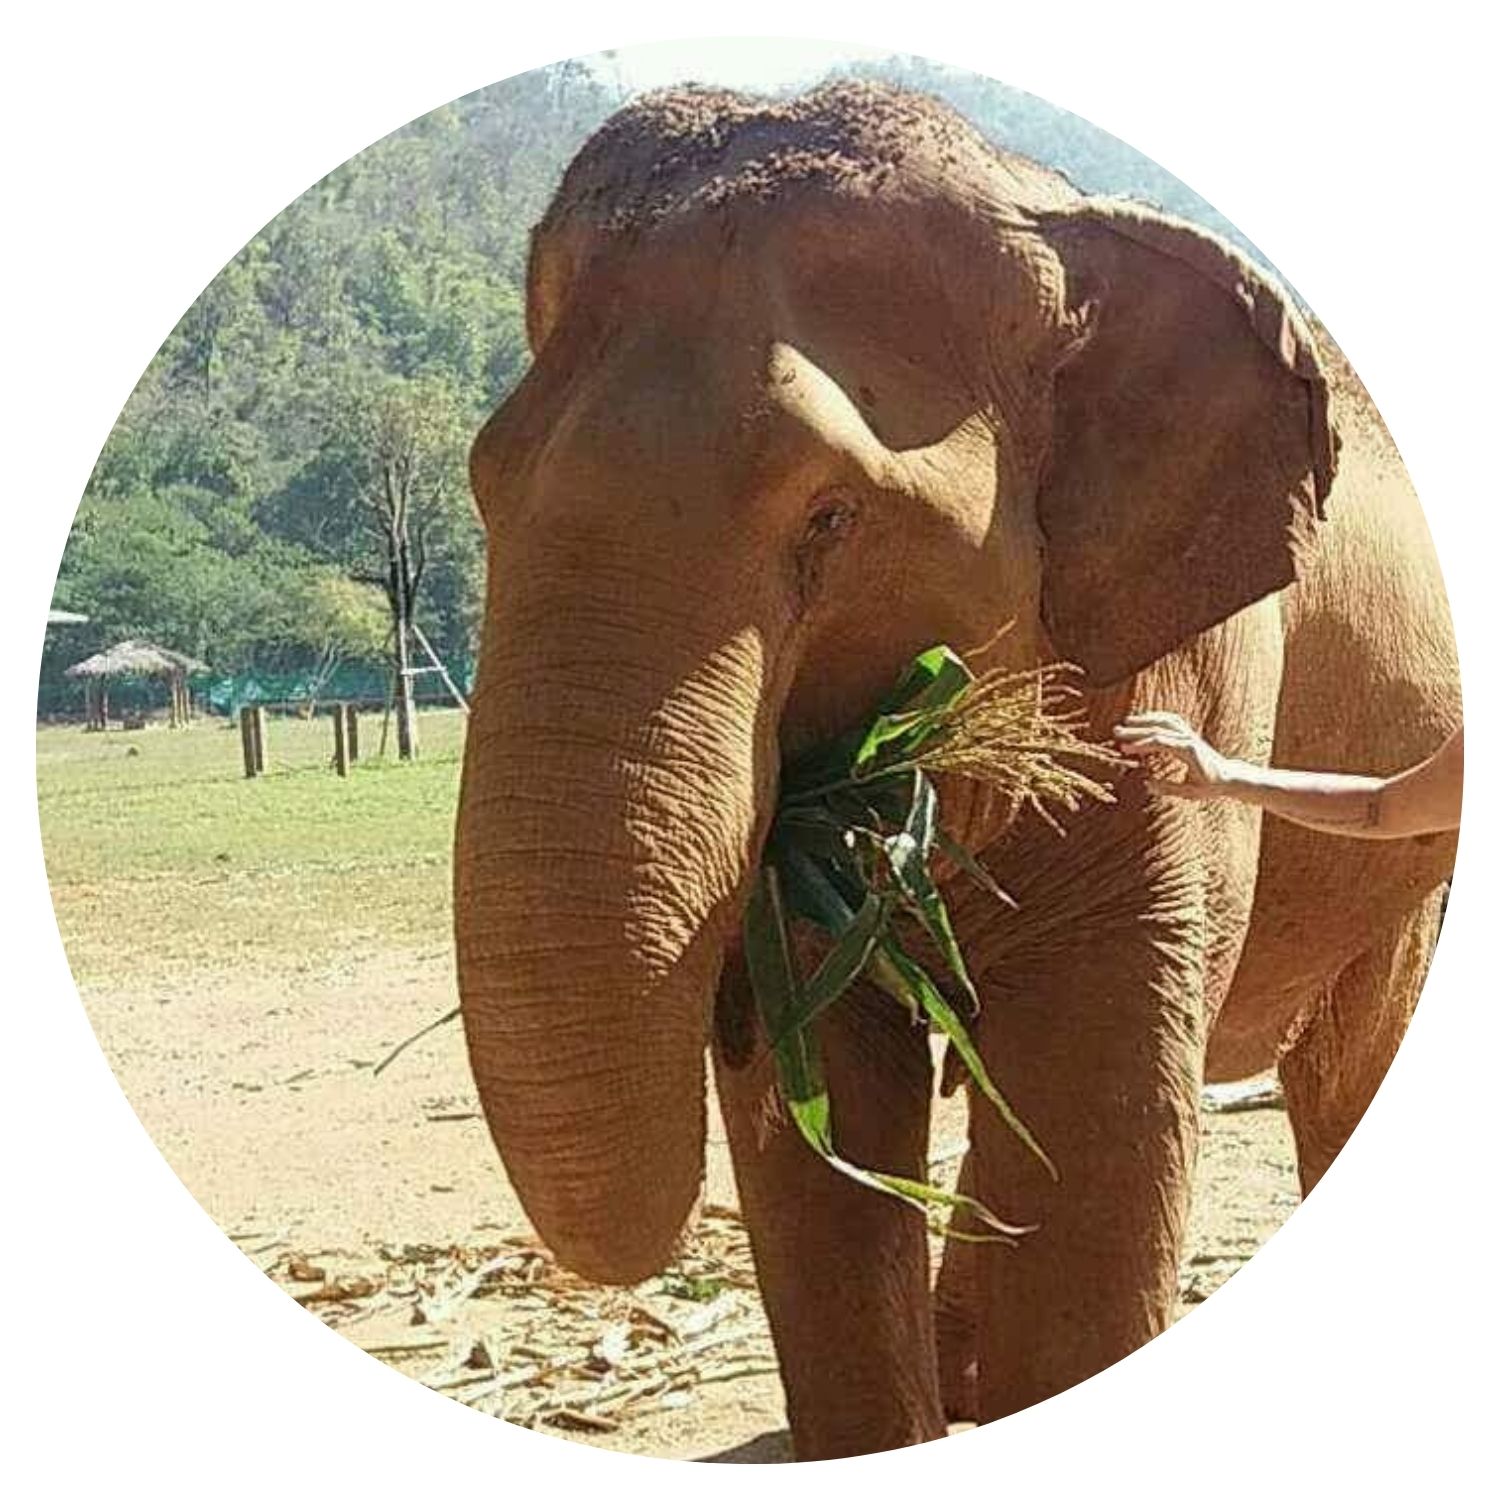 Voyage en Thaïlande sur mesure avec l'avis de Emylance C, découvrez la majesté des éléphants en pleine nature.